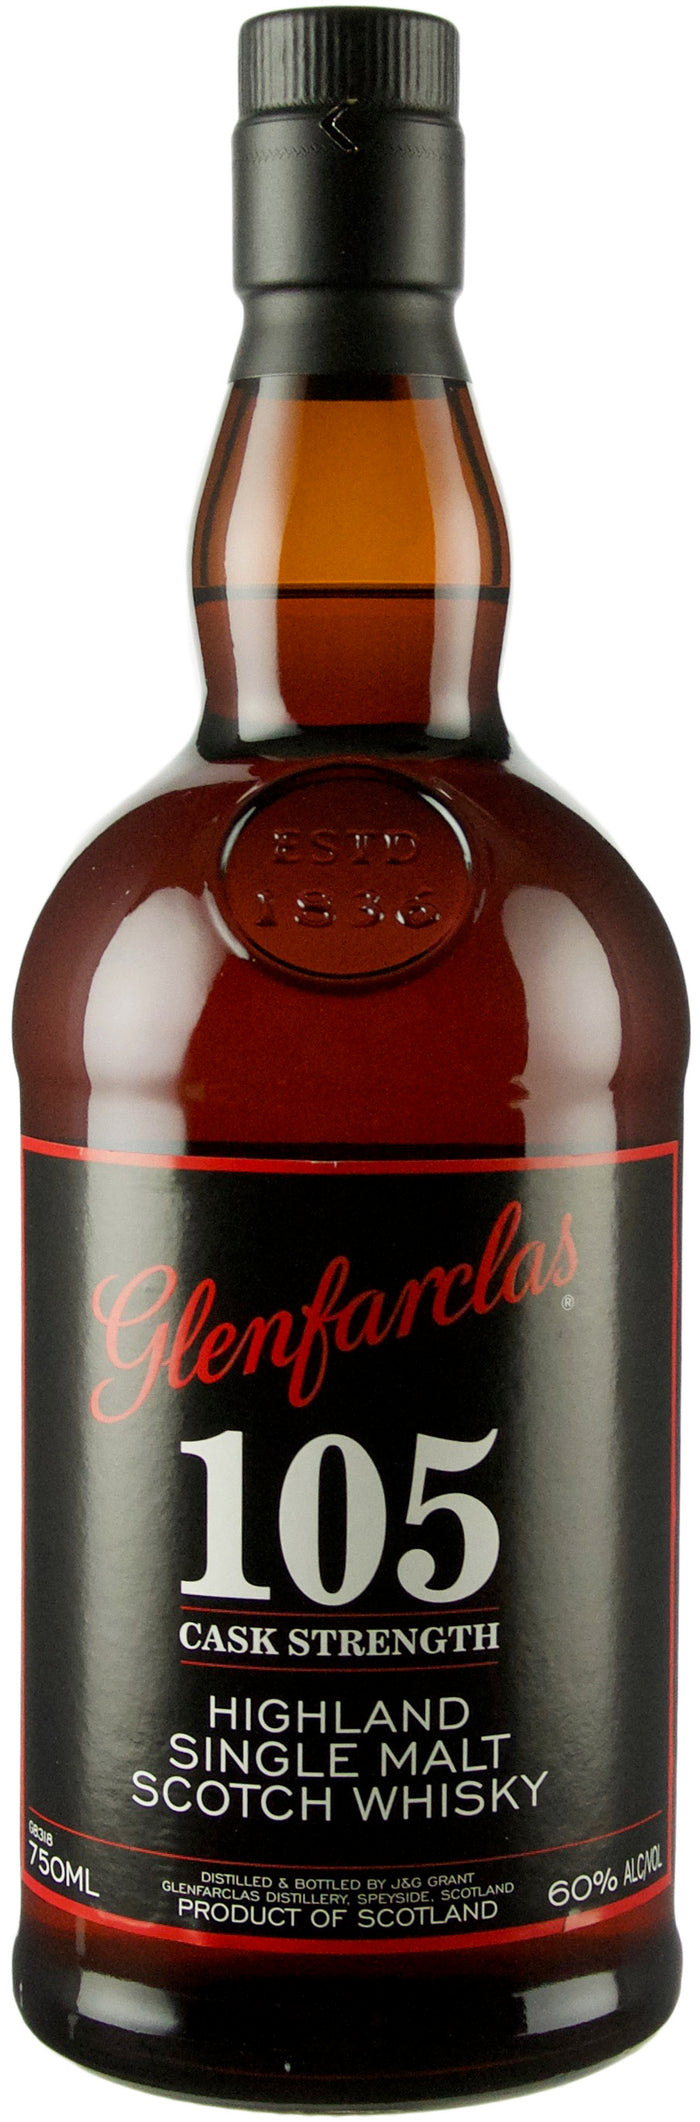 Glenfarclas 105 Cask Strength Highland Single Malt Scotch Whiskey